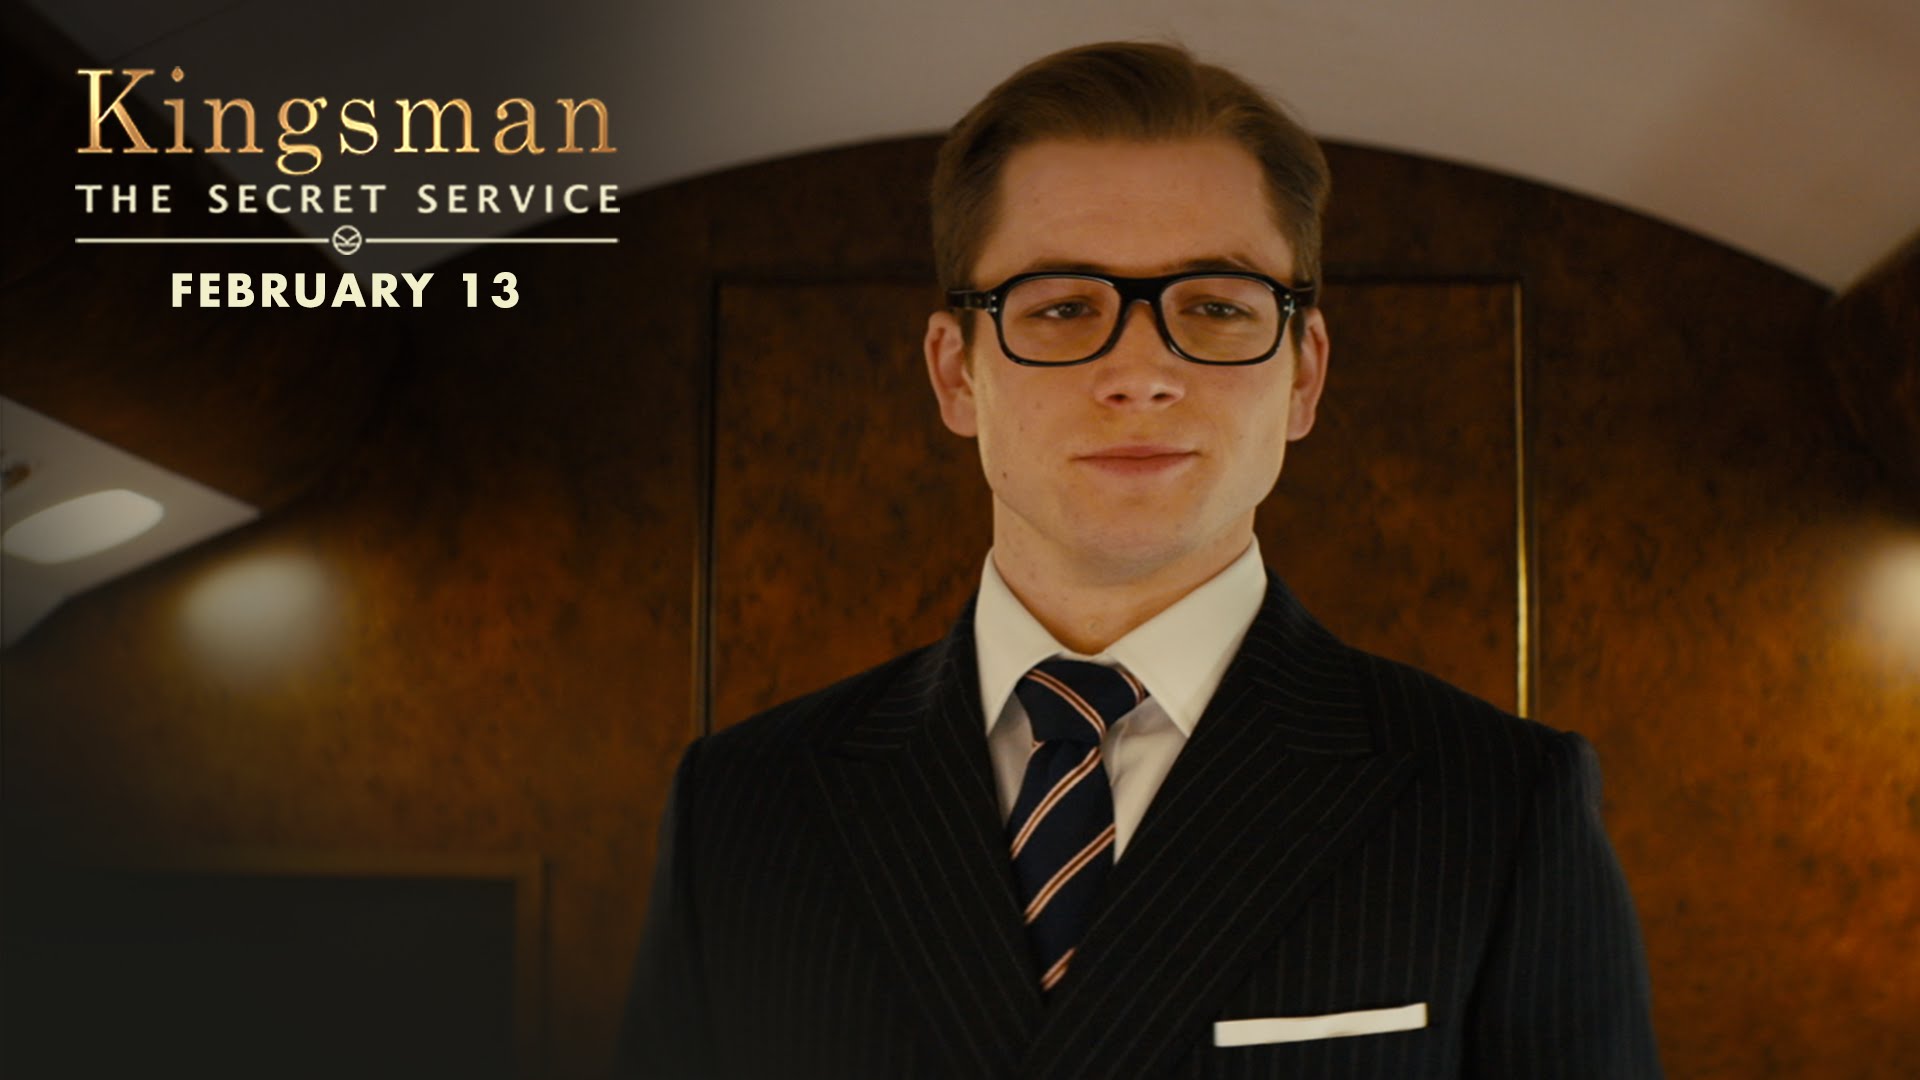 The Secret Service - Kingsman The Secret Service , HD Wallpaper & Backgrounds